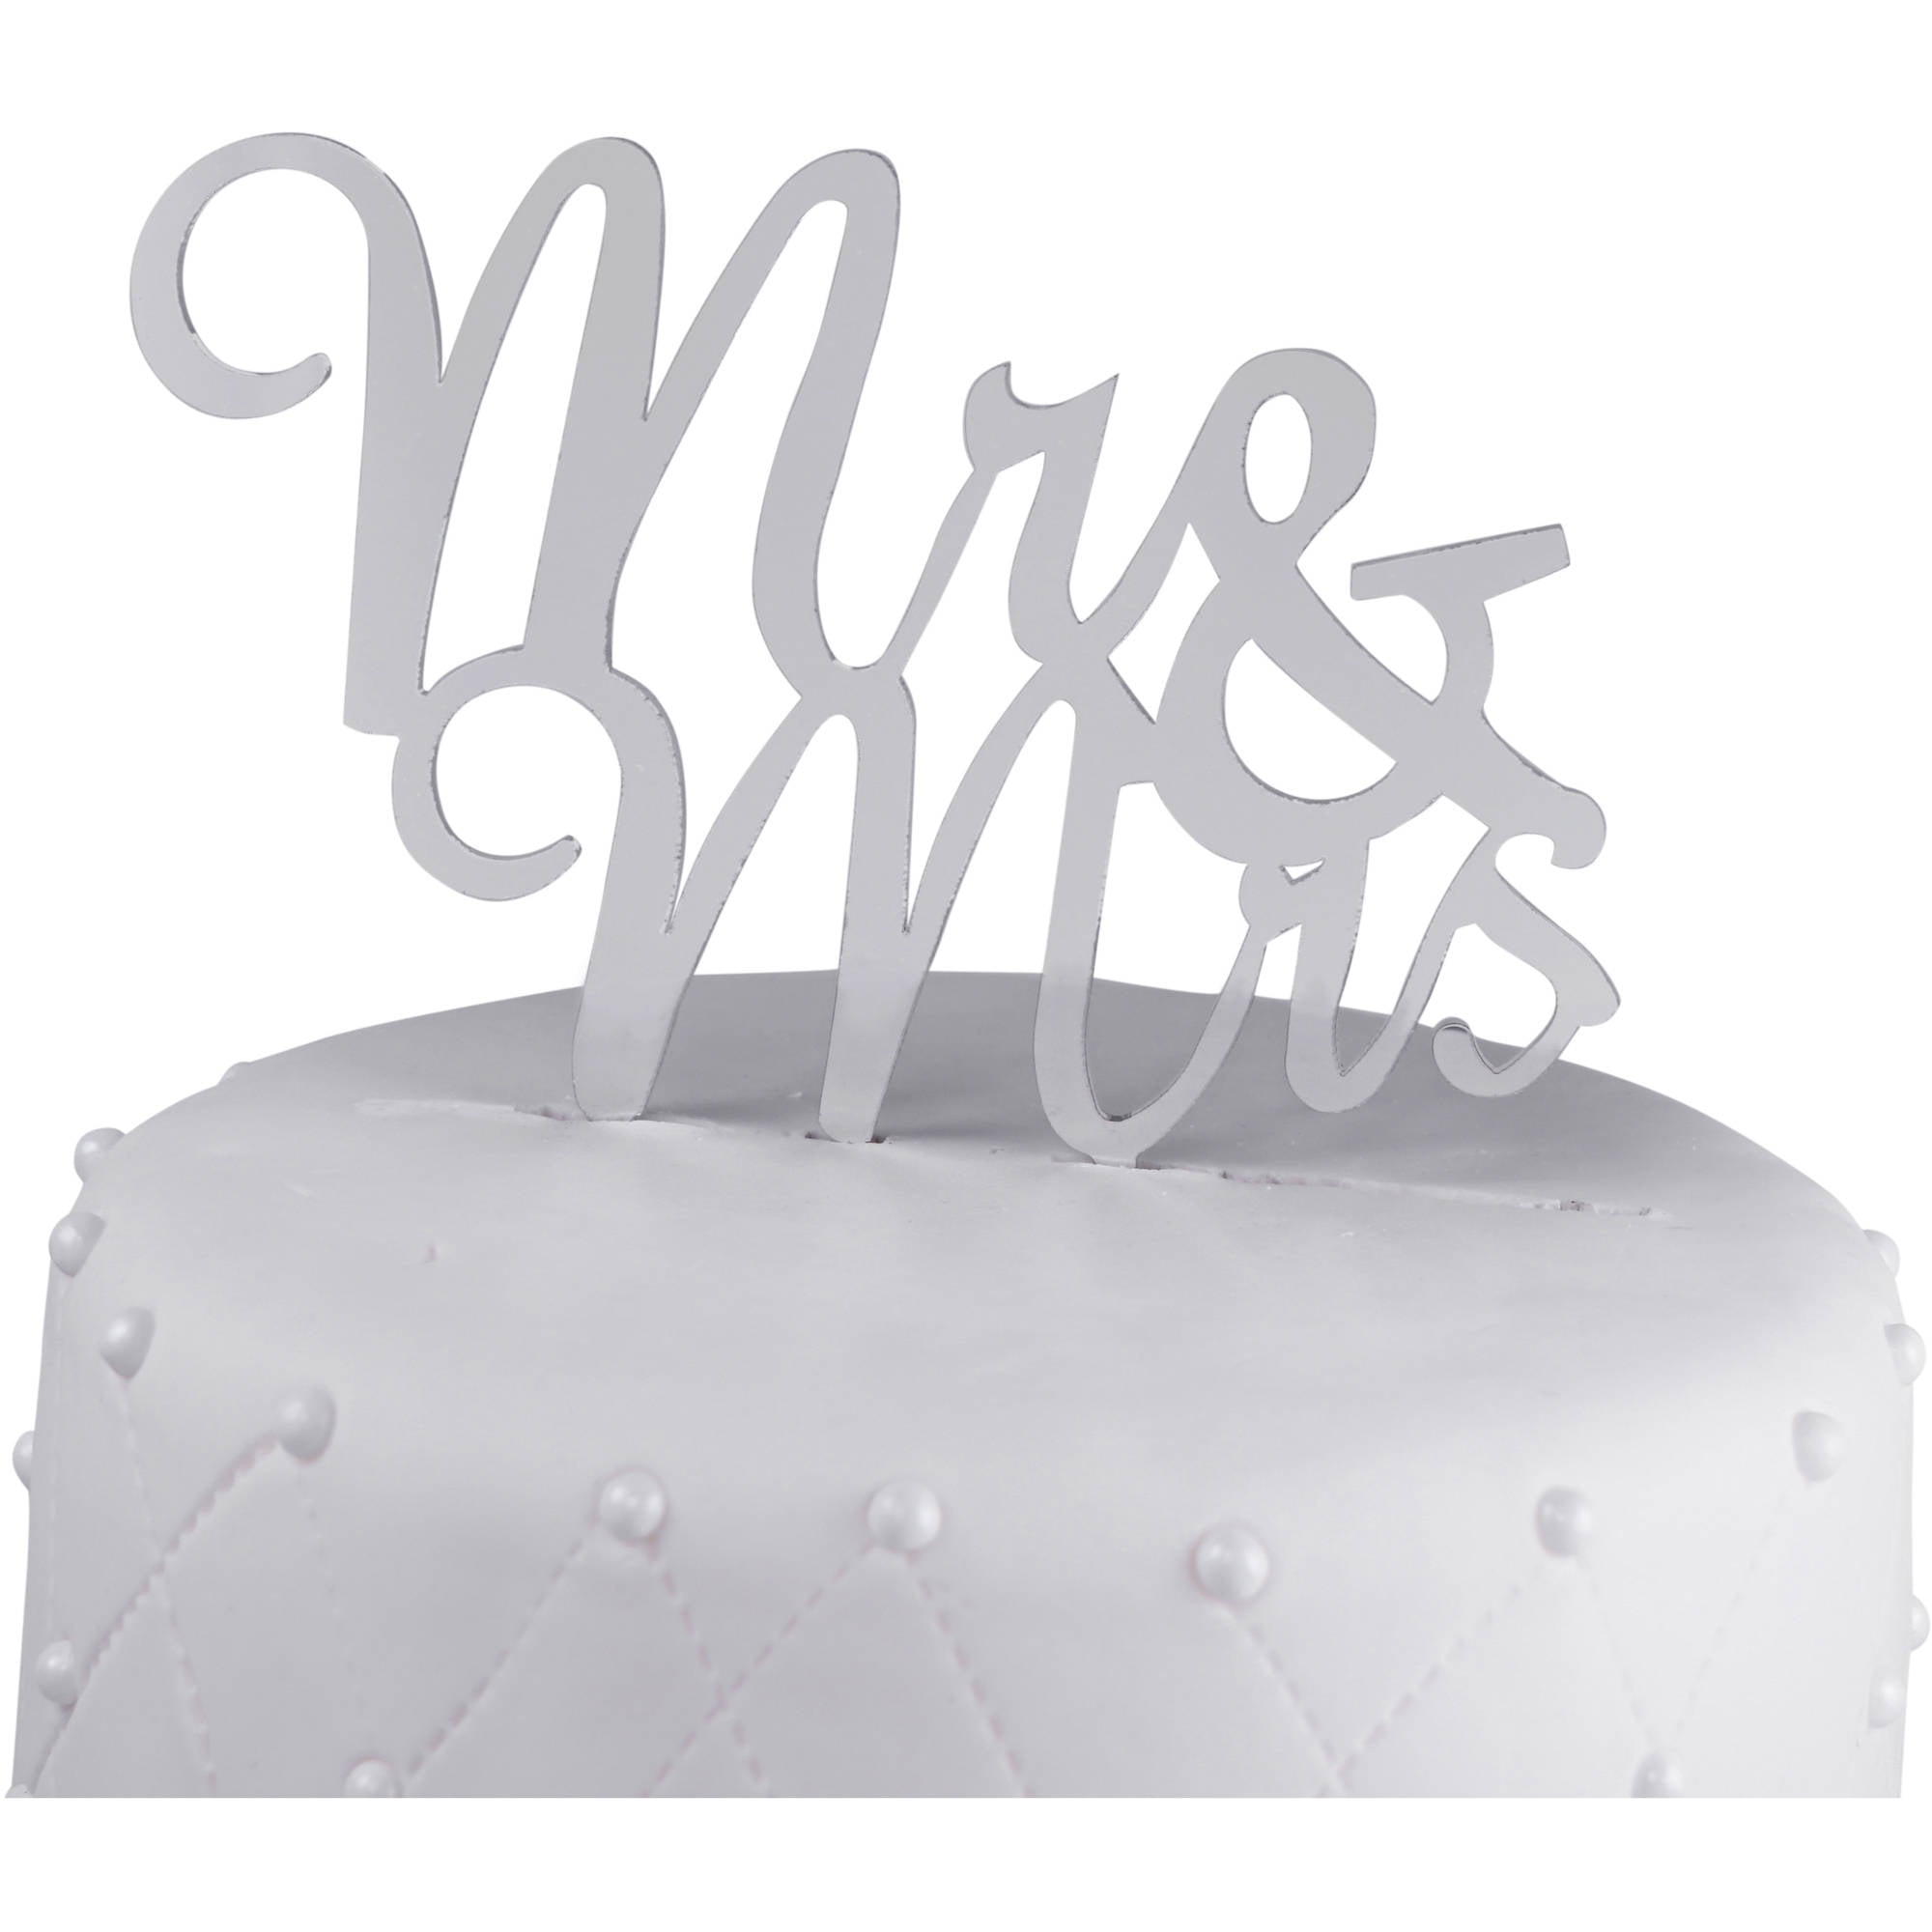 MR & MRS WEDDING CAKE TOPPER-AND-WHITE ACRYLIC SIGN/KEEPSAKE PLASTIC DECORATION 